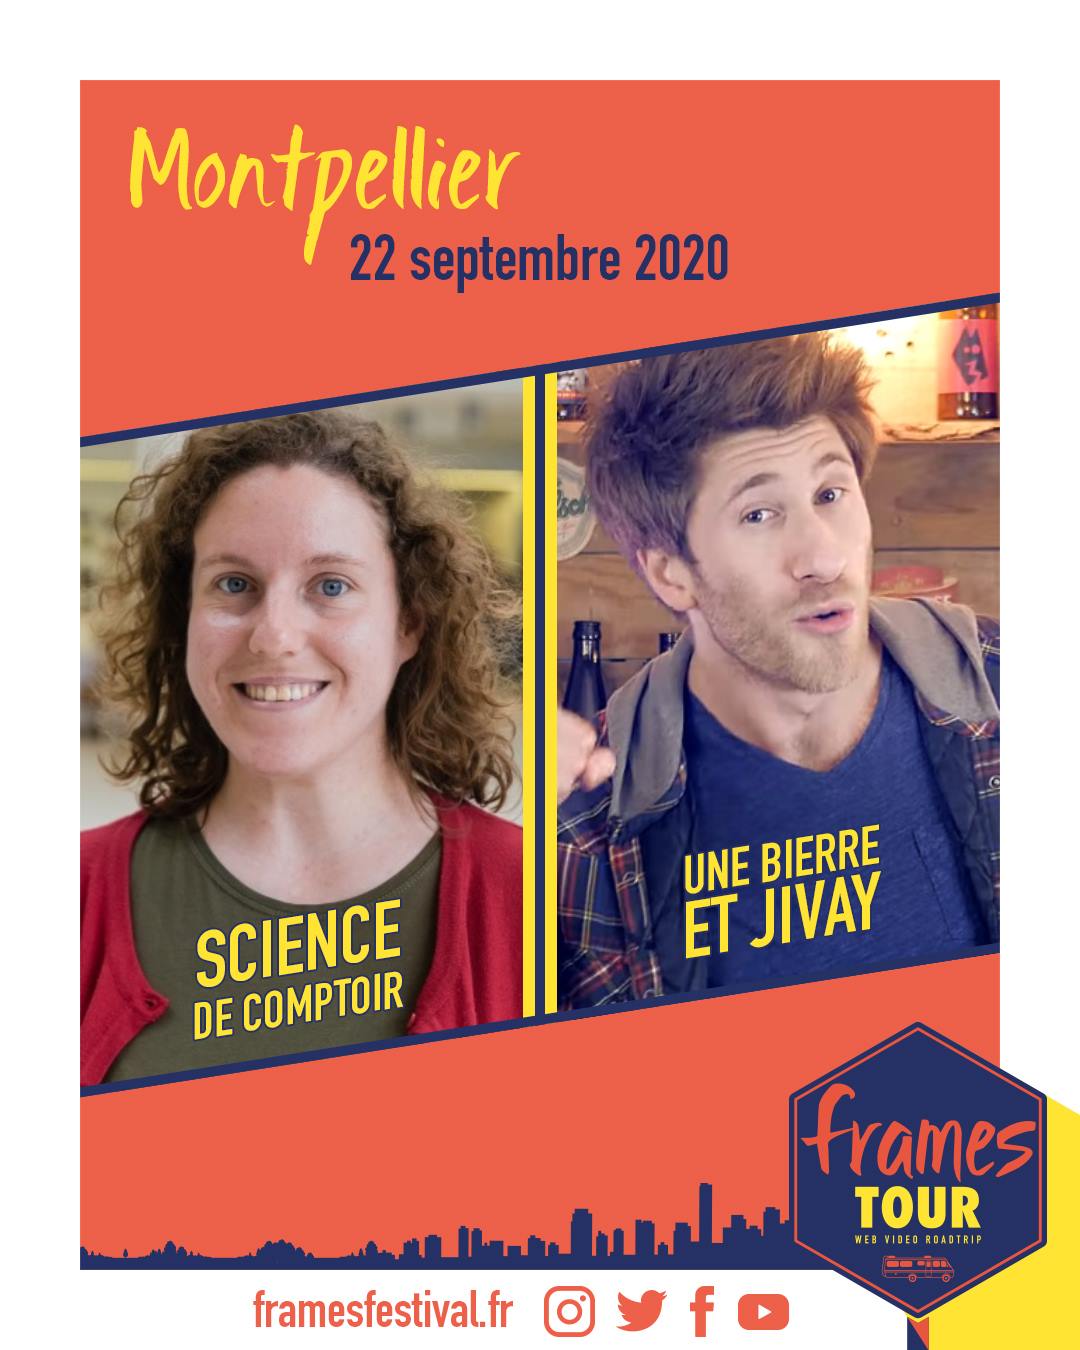 Frames 2020, programmation Montpellier avec les chaînes Youtube Science de comptoir et Une bière et Jivay